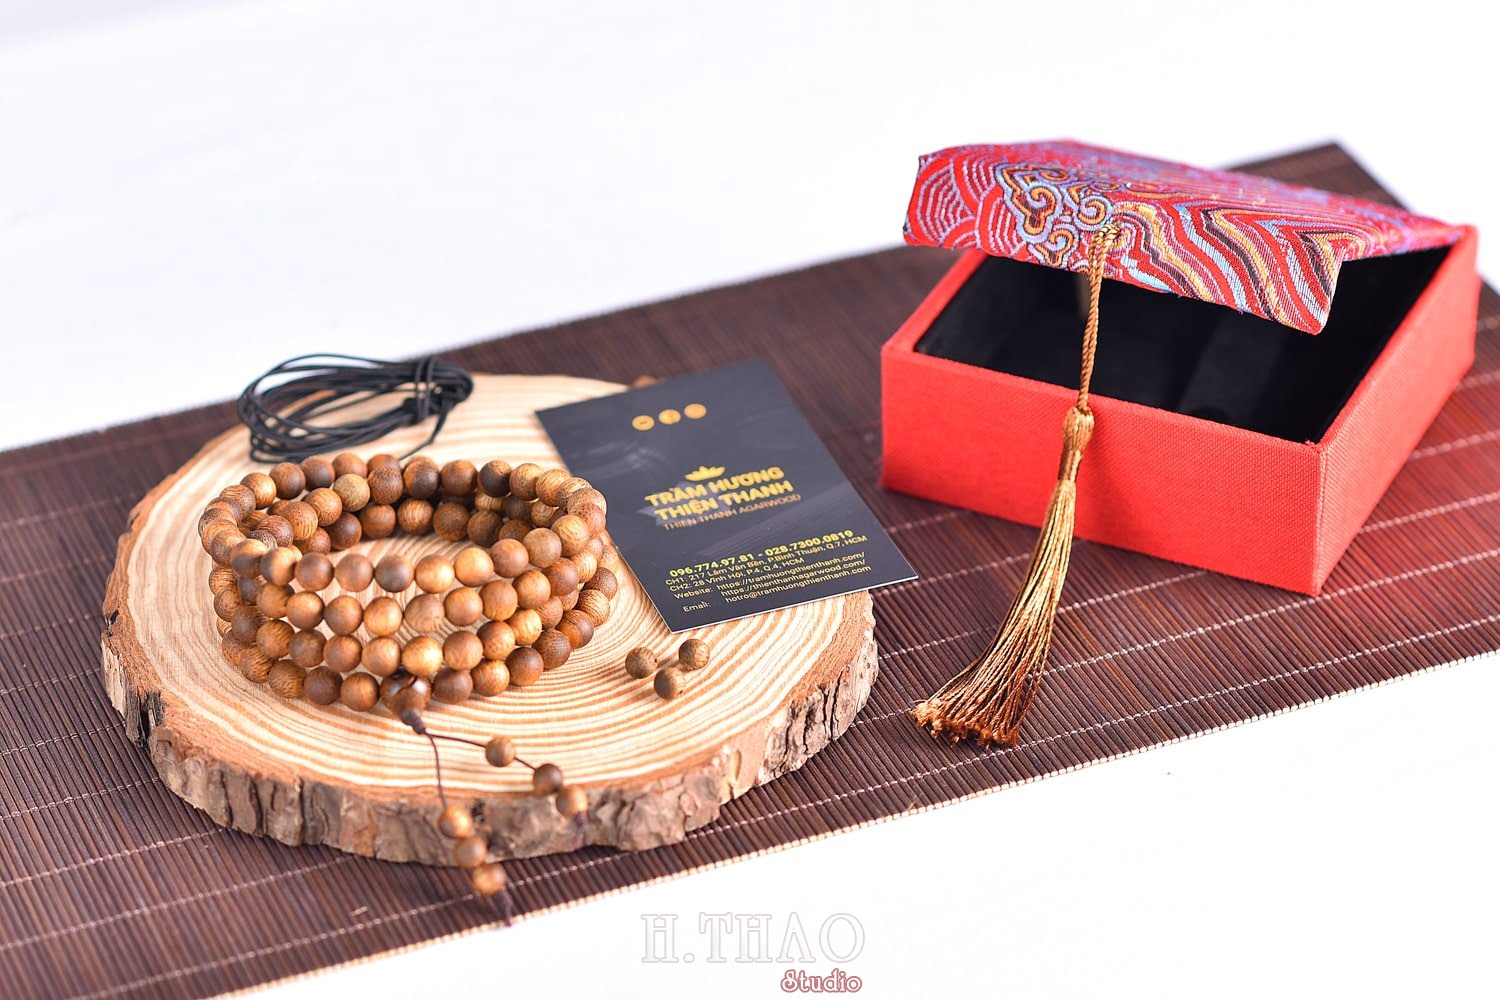 Anh trang hat 14 - Bộ ảnh sản phẩm vòng tràng hạt đeo tay đẹp - HThao Studio